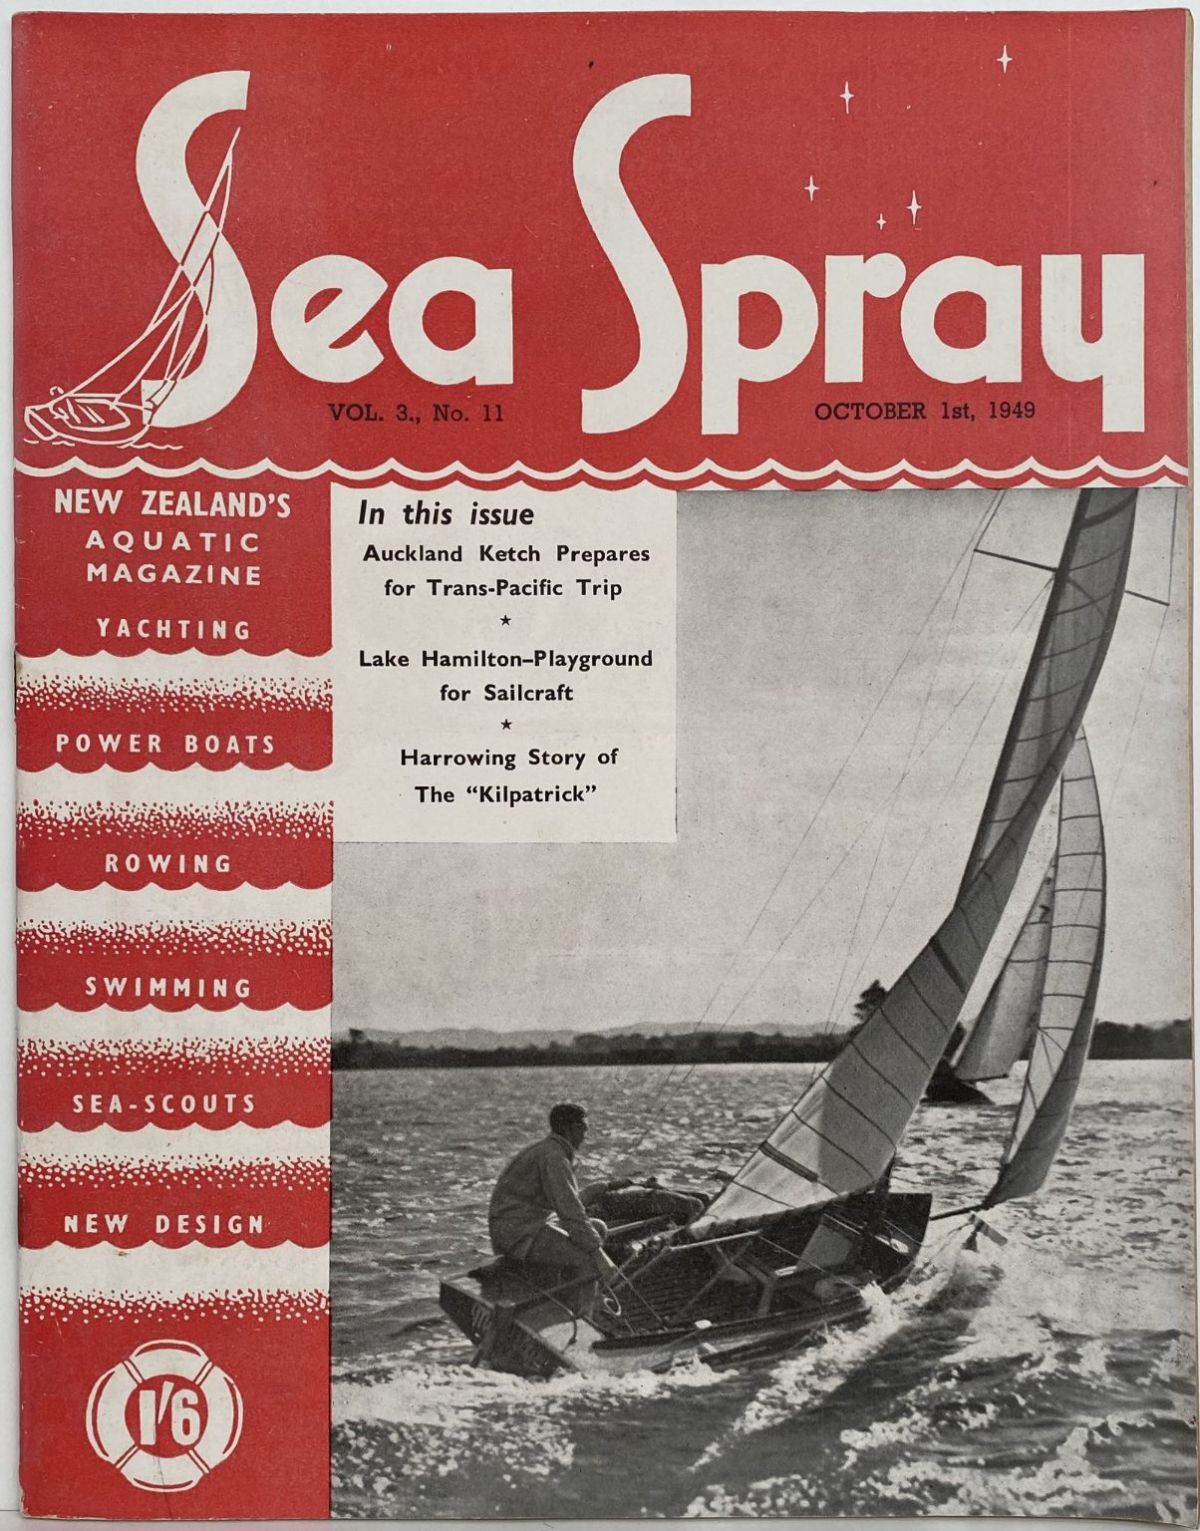 VINTAGE MAGAZINE: Sea Spray - Vol. 3, No. 11 - October 1949